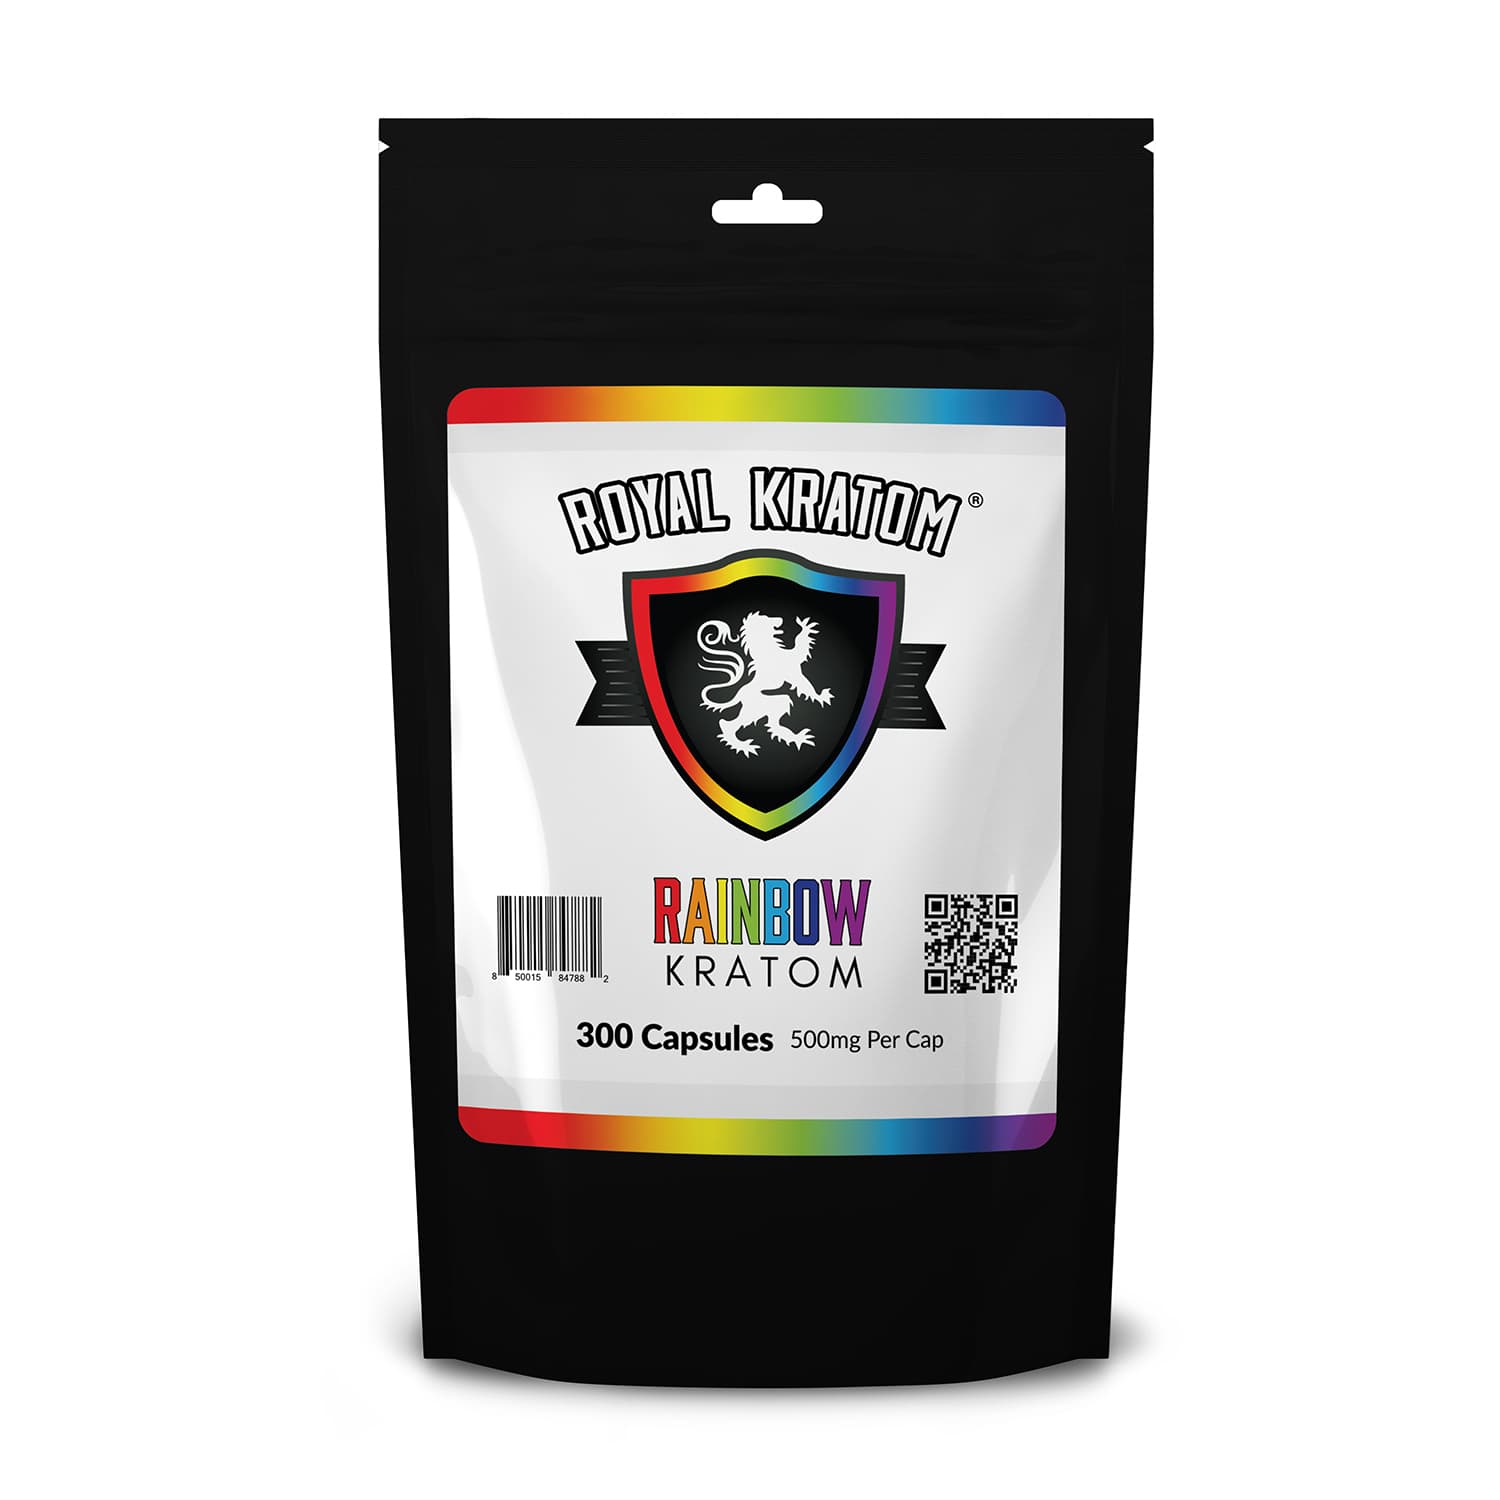 Royal Kratom Rainbow Kratom Blend Capsules 300 Count package